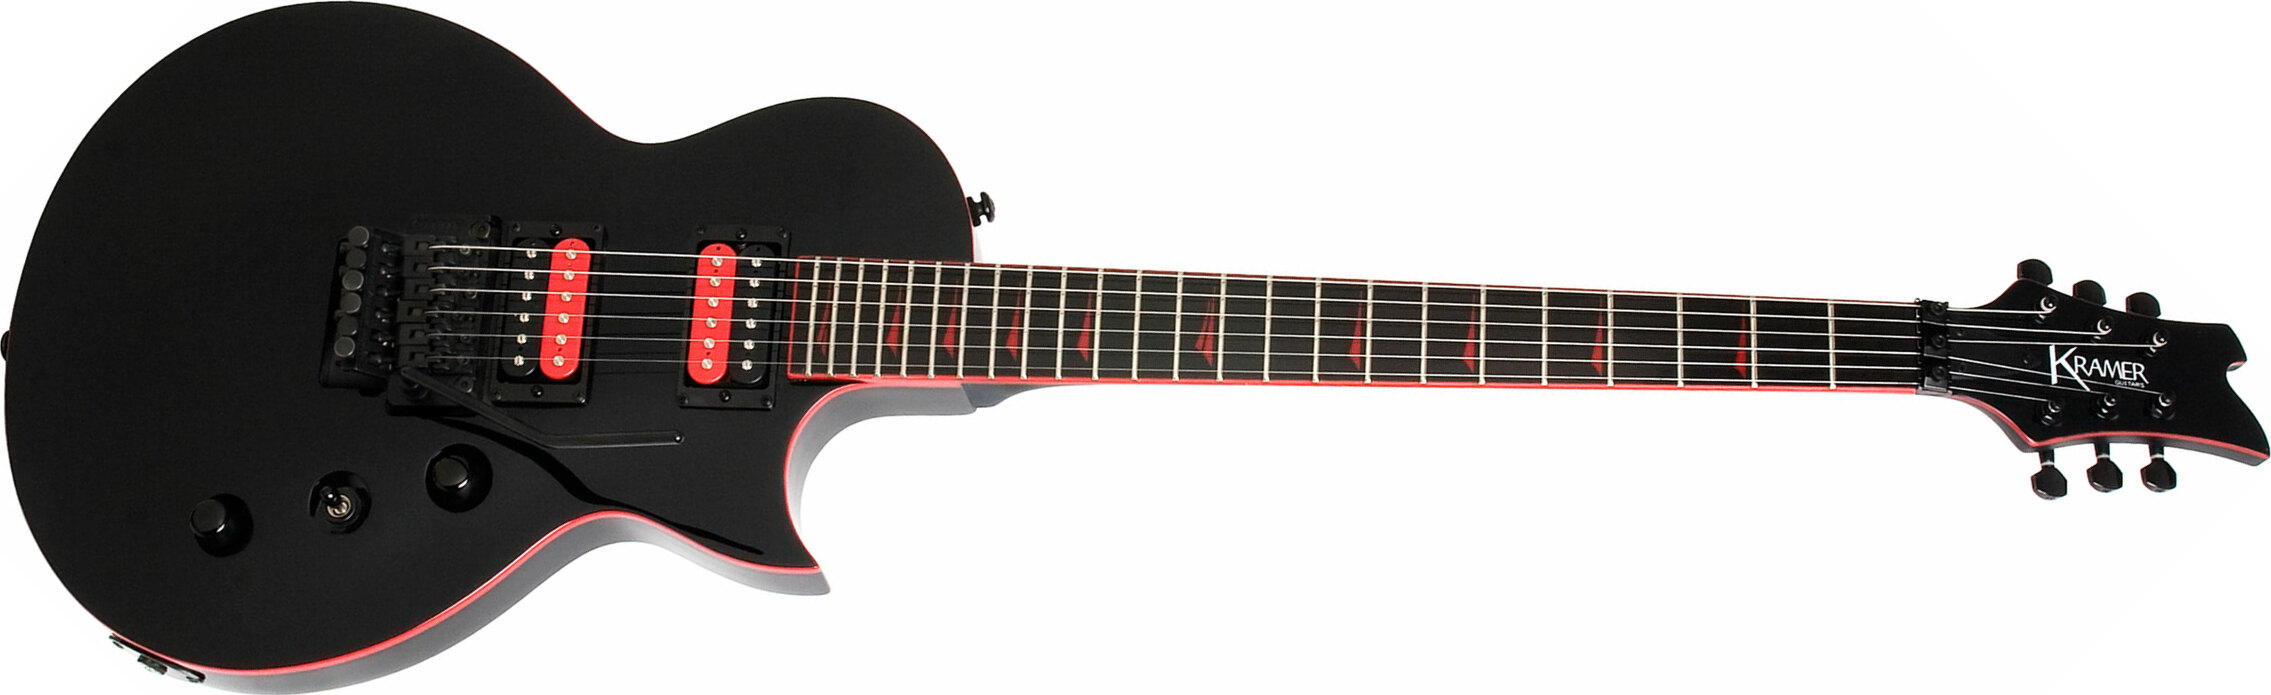 Kramer Assault 220 2h Fr Rw - Black Red Binding - Guitare Électrique Single Cut - Main picture